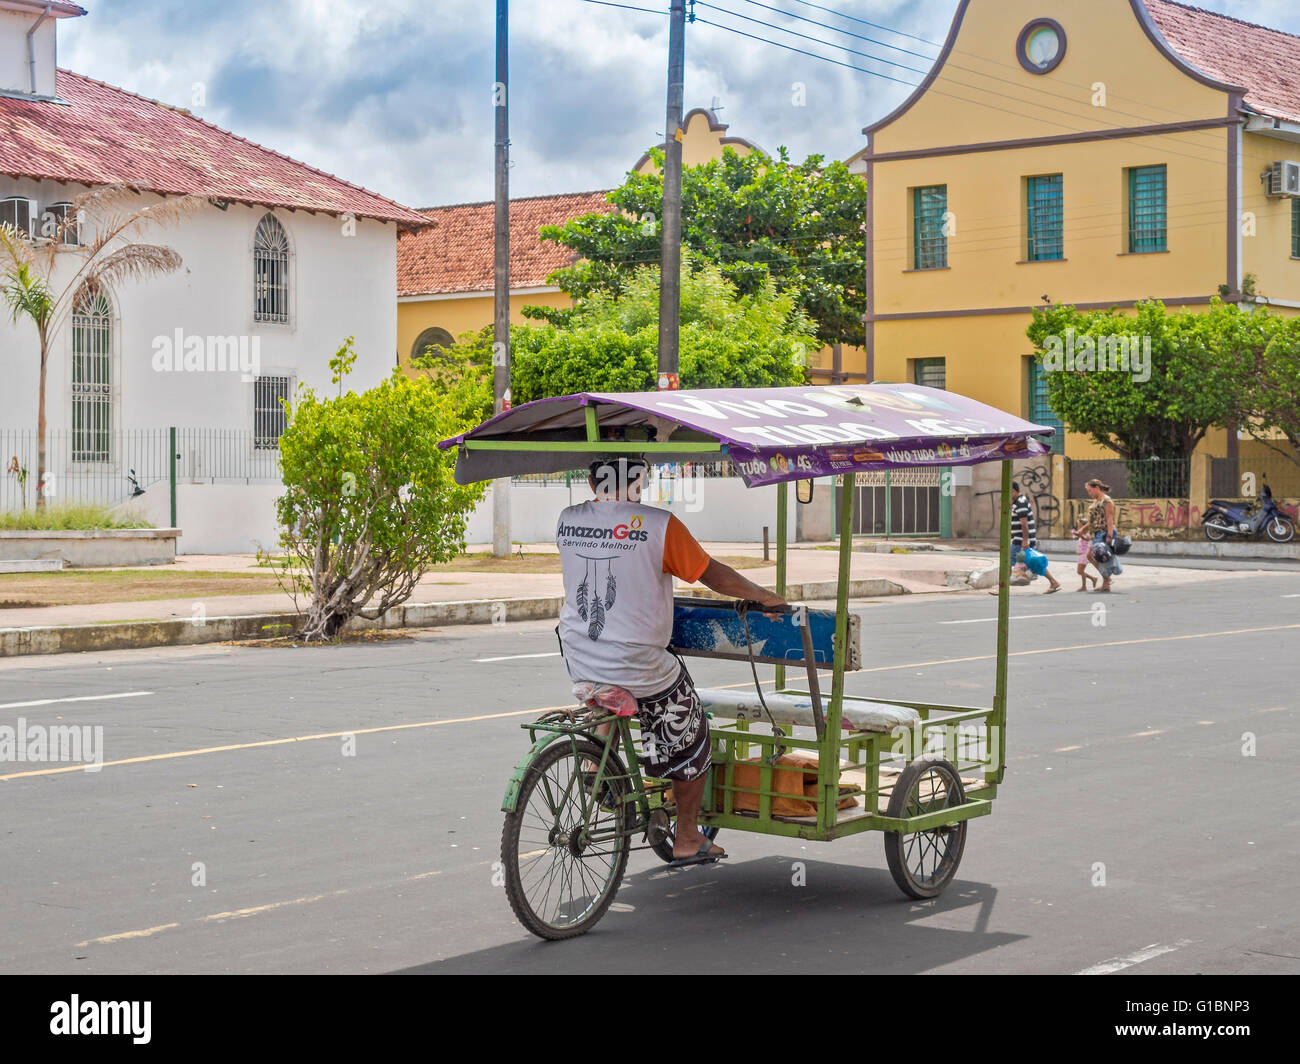 Risciò ciclo di viaggiare attraverso le città di Parintins Brasile Foto Stock